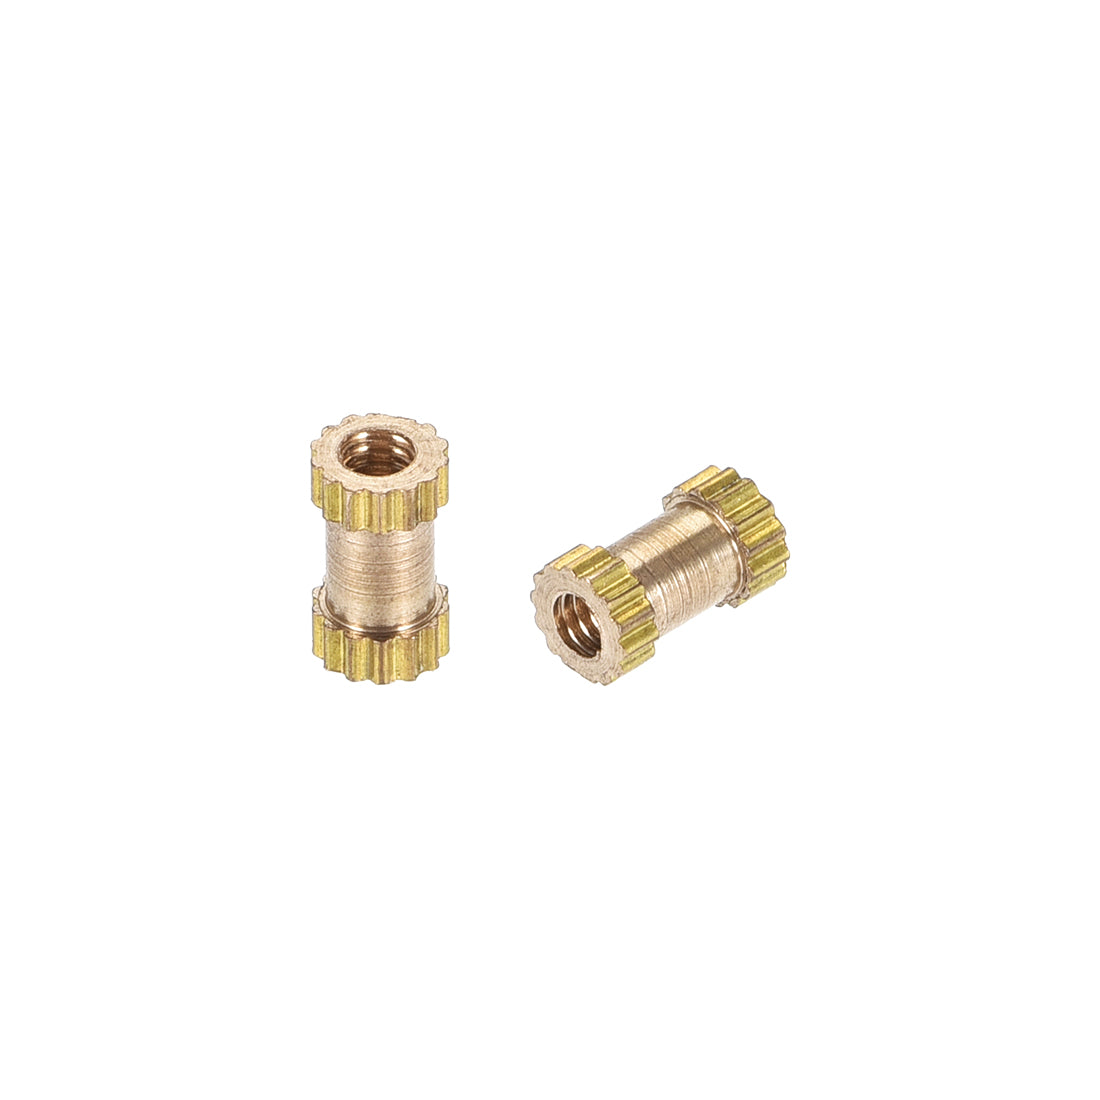 uxcell Uxcell Knurled Insert Nuts, M2 x 6mm(L) x 3.5mm(OD) Female Thread Brass Embedment Assortment Kit, 30 Pcs